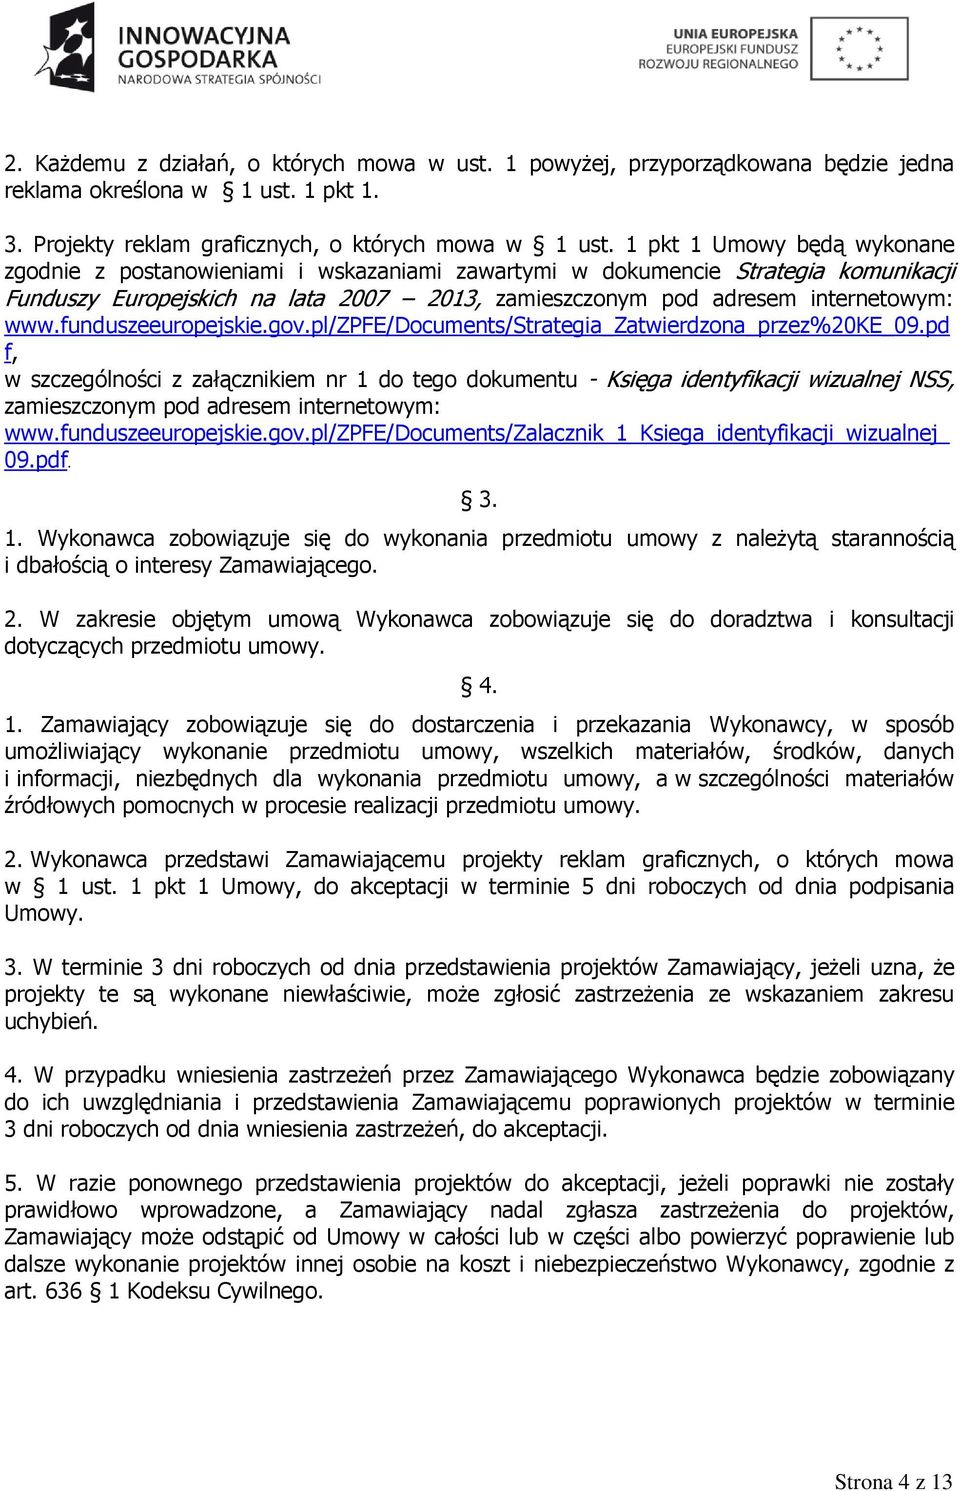 funduszeeuropejskie.gov.pl/zpfe/documents/strategia_zatwierdzona_przez%20ke_09.